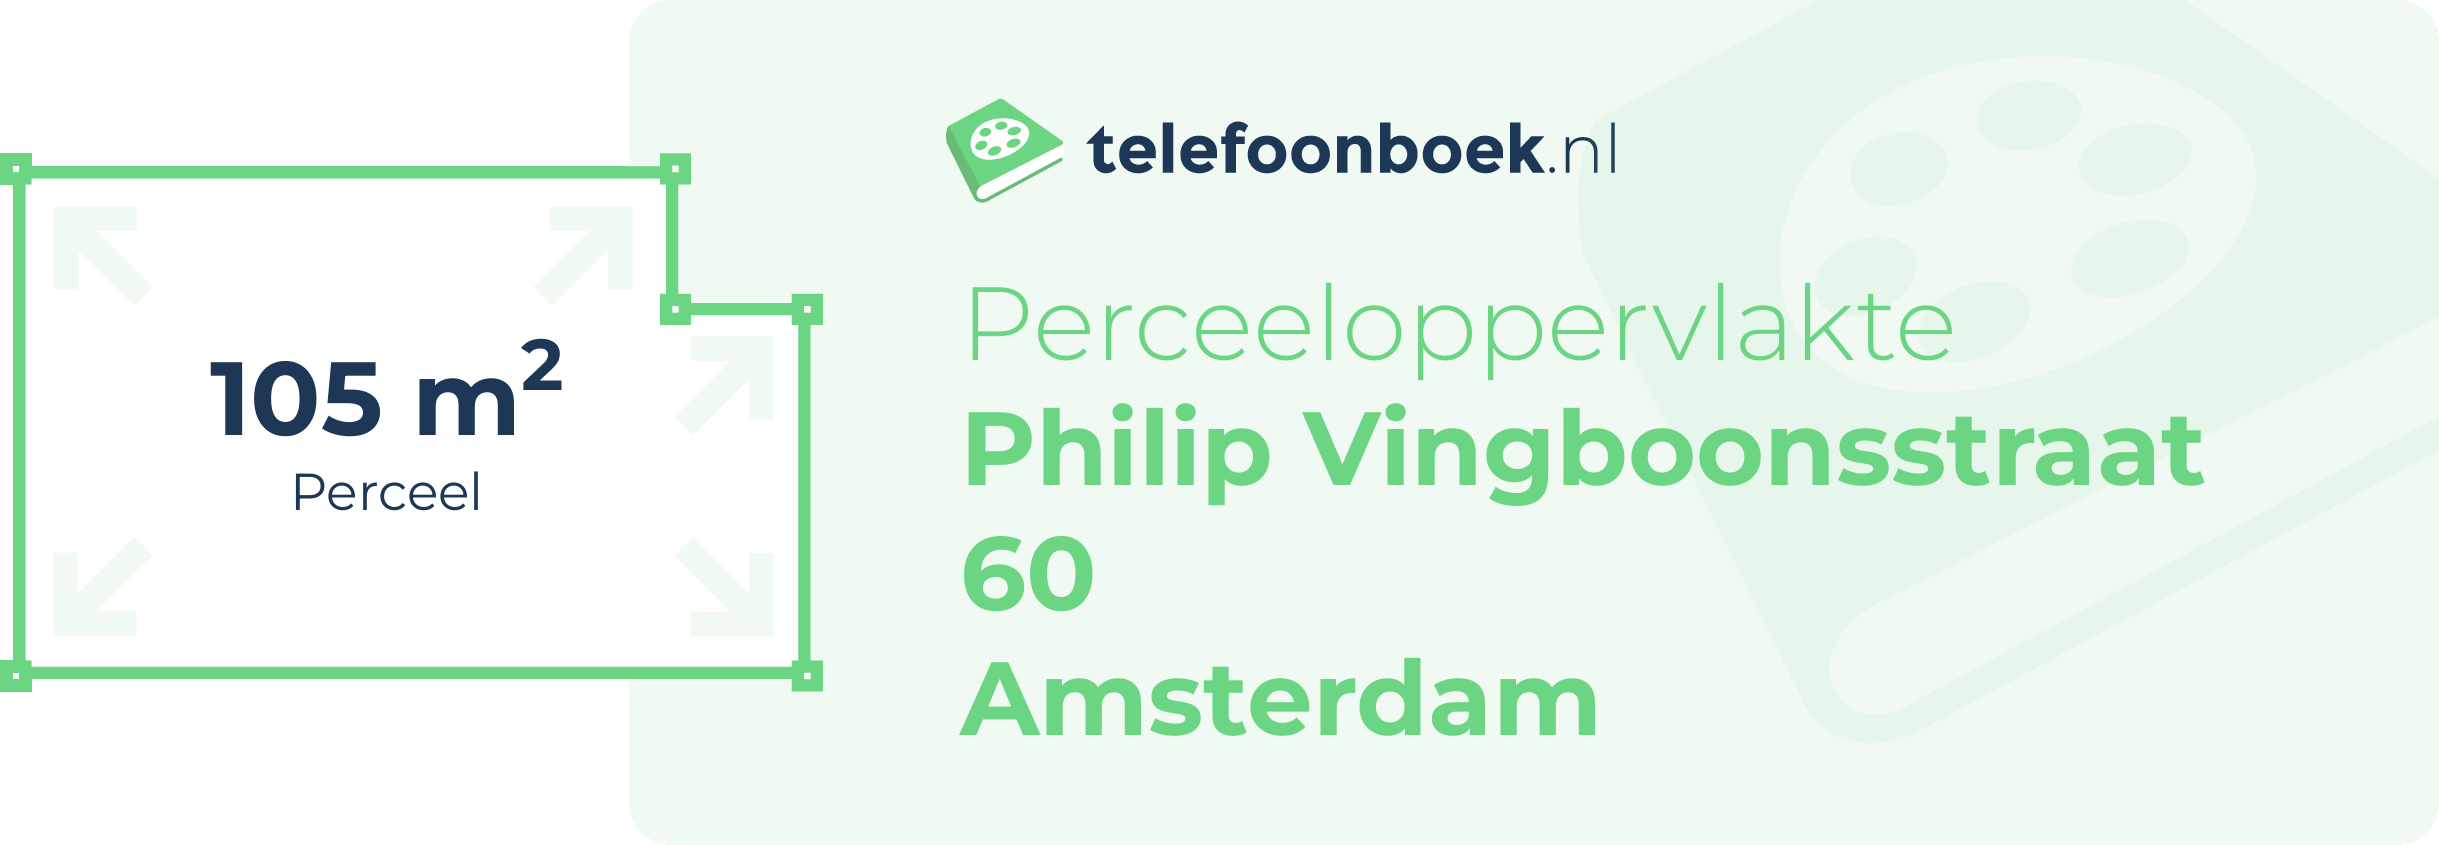 Perceeloppervlakte Philip Vingboonsstraat 60 Amsterdam